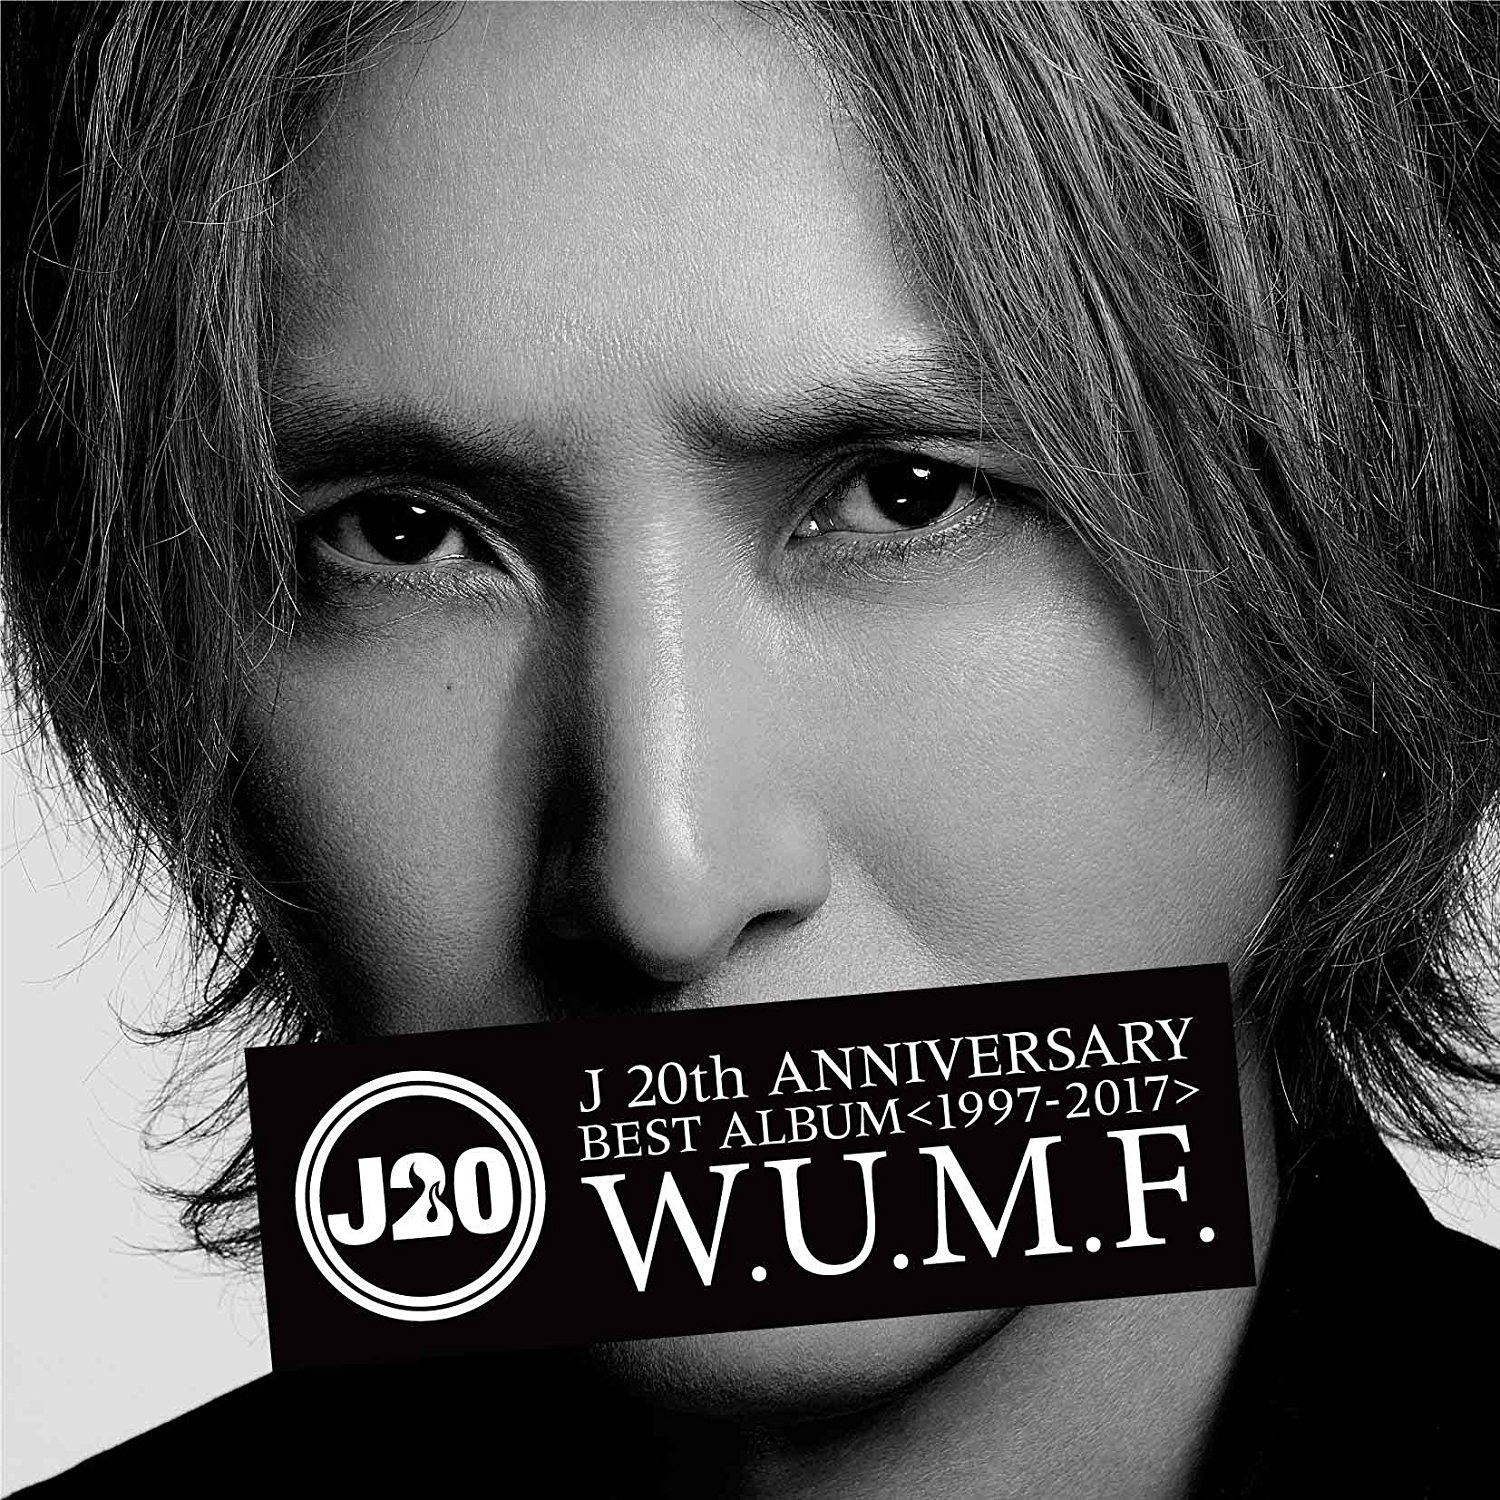 J 20th Anniversary Best Album 1997-2017 W.U.M.F. [2CD] (J)